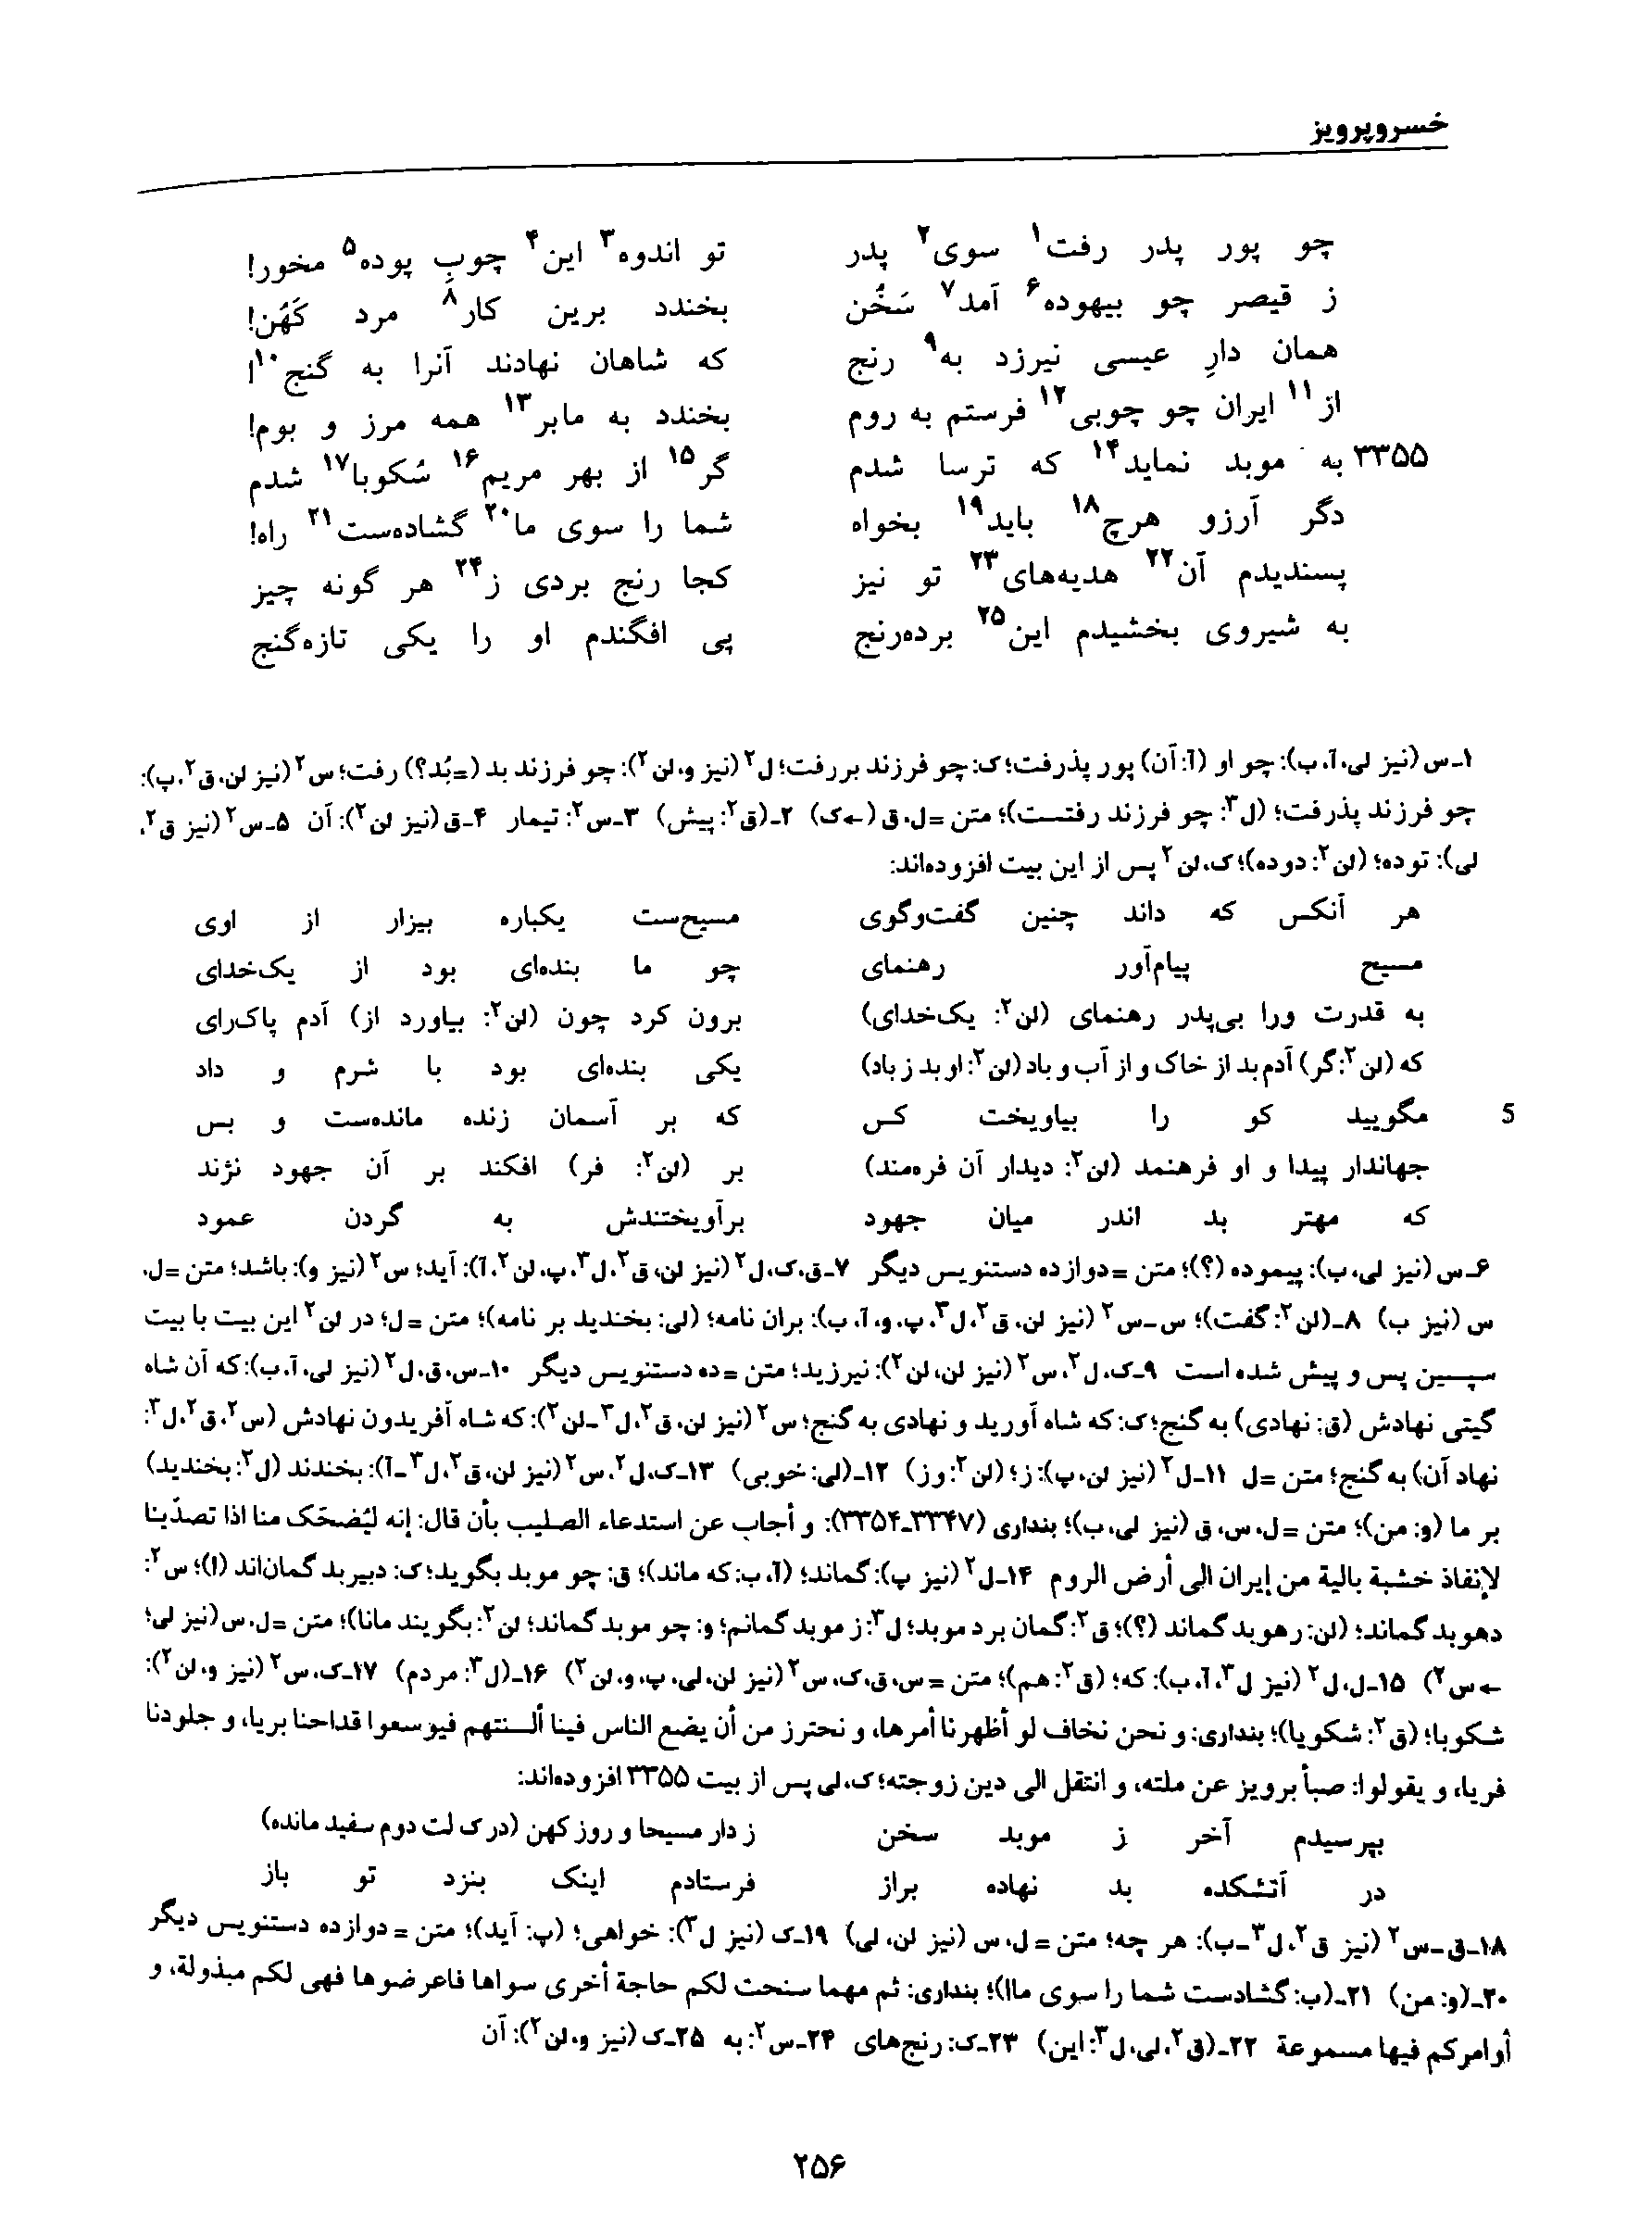 vol. 8, p. 256